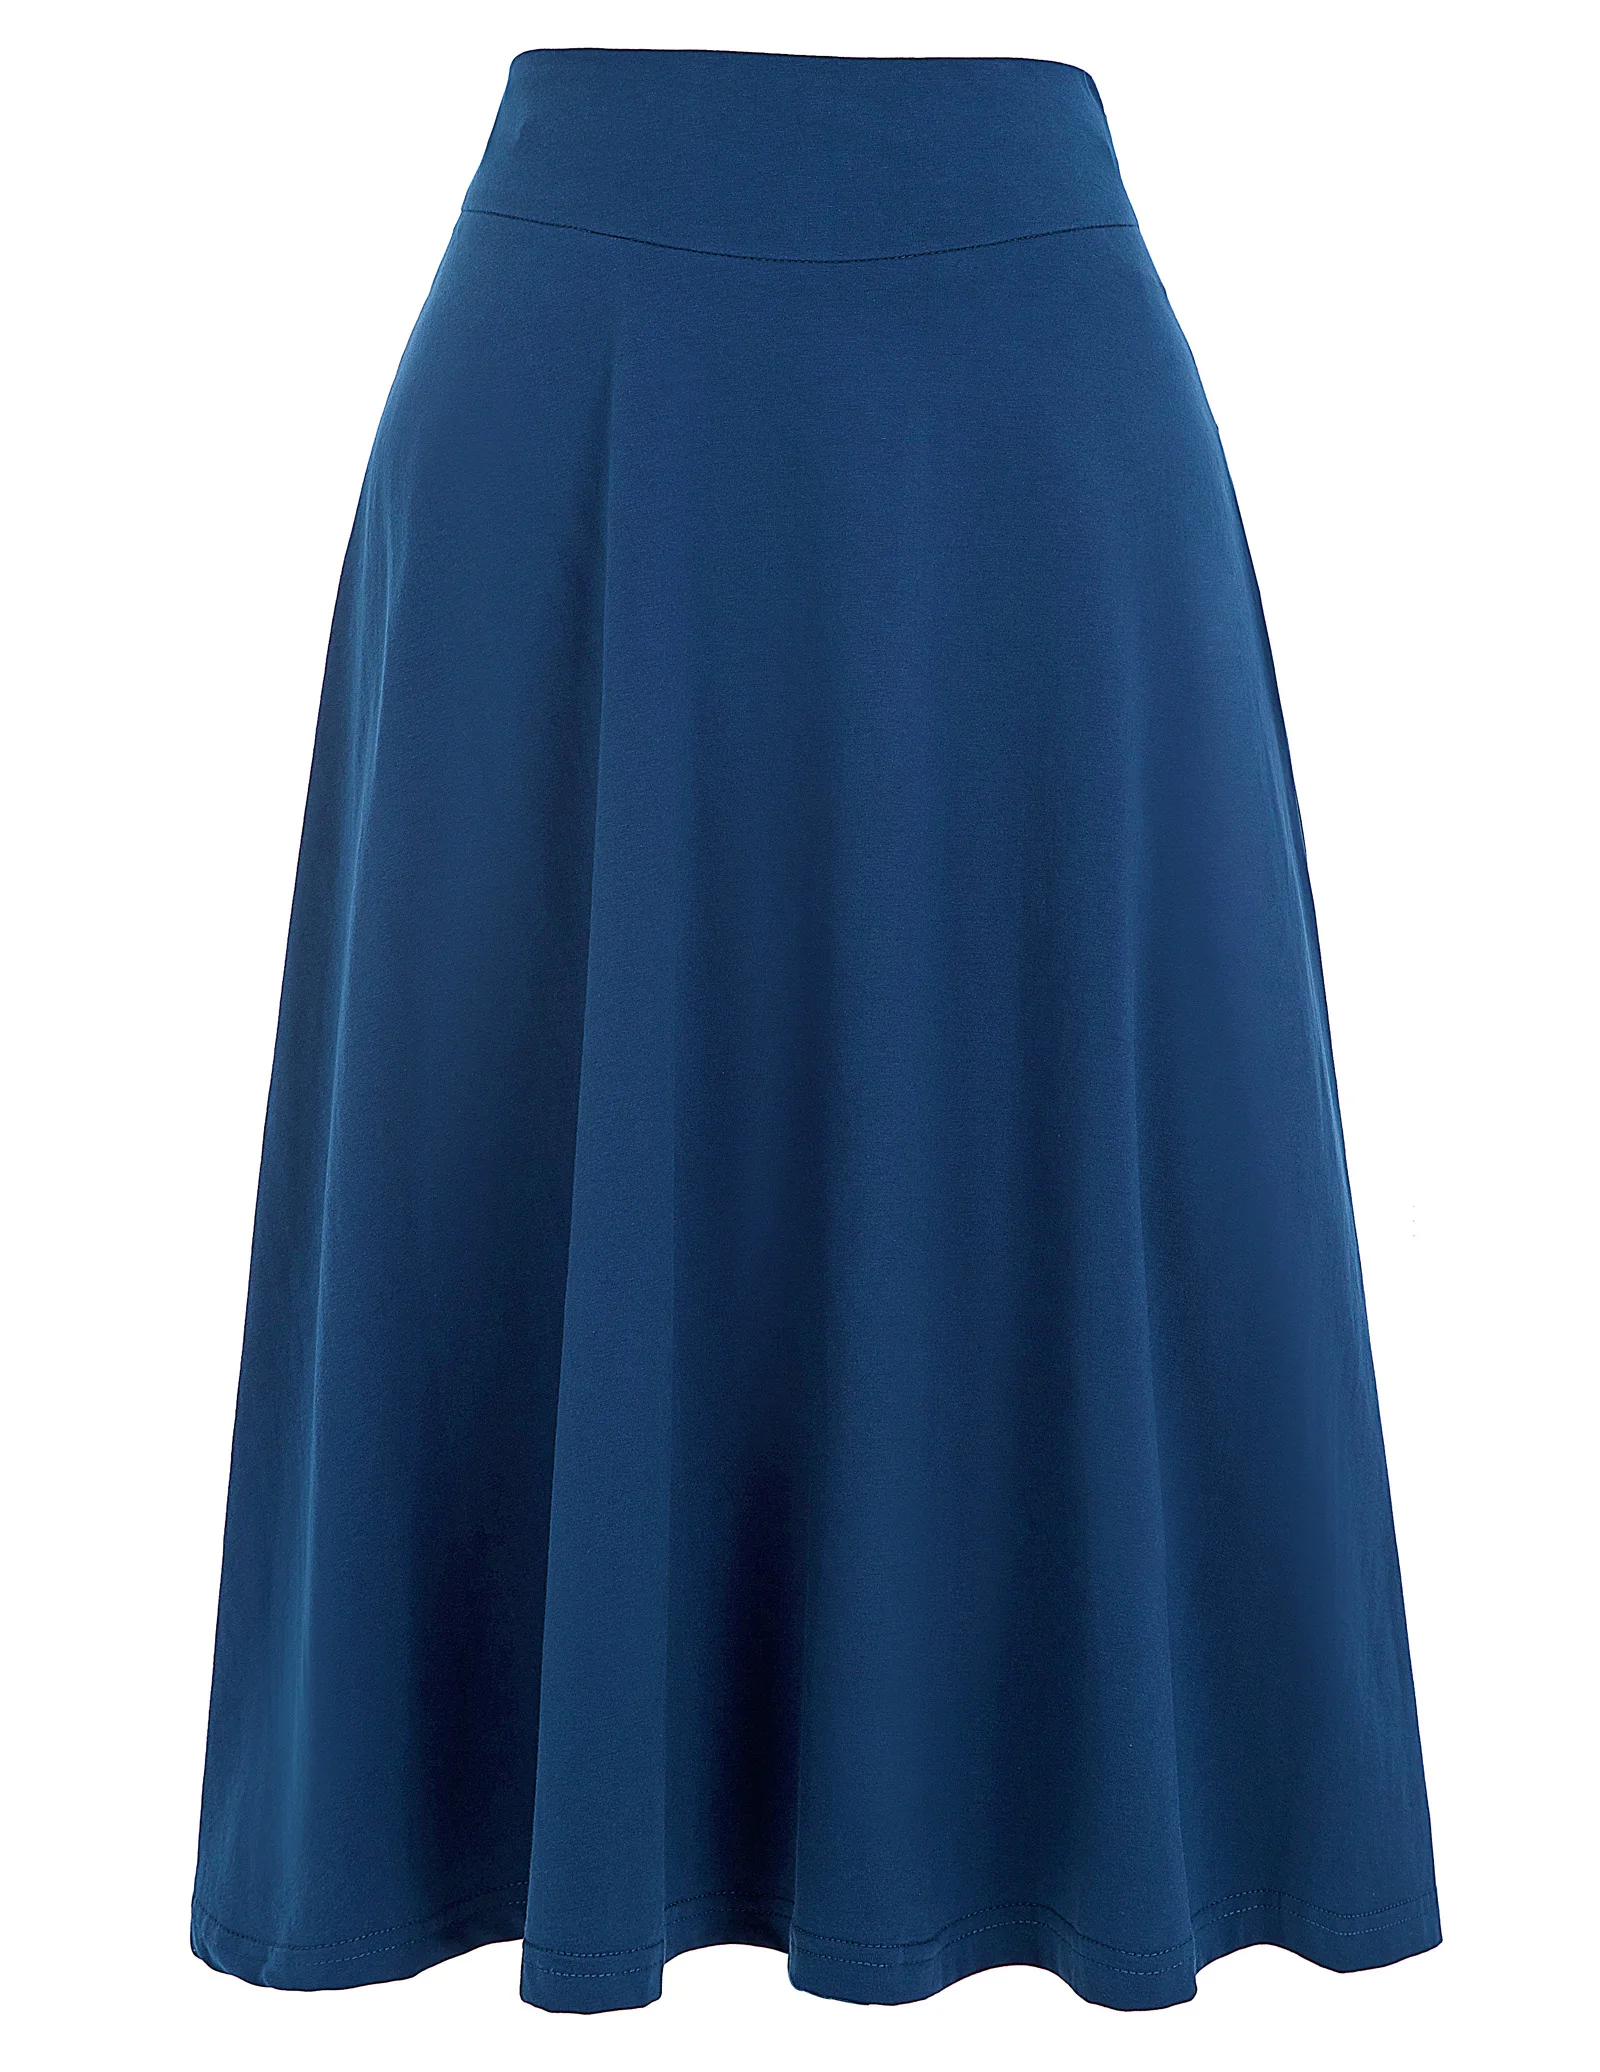 Элегантная плиссированная юбка с высокой талией, черная Расклешенная Юбка До Колена, Ретро стиль, 50 s, рокабилли, Свинг, юбки для женщин, Faldas Saia Jupe - Цвет: Yale Blue